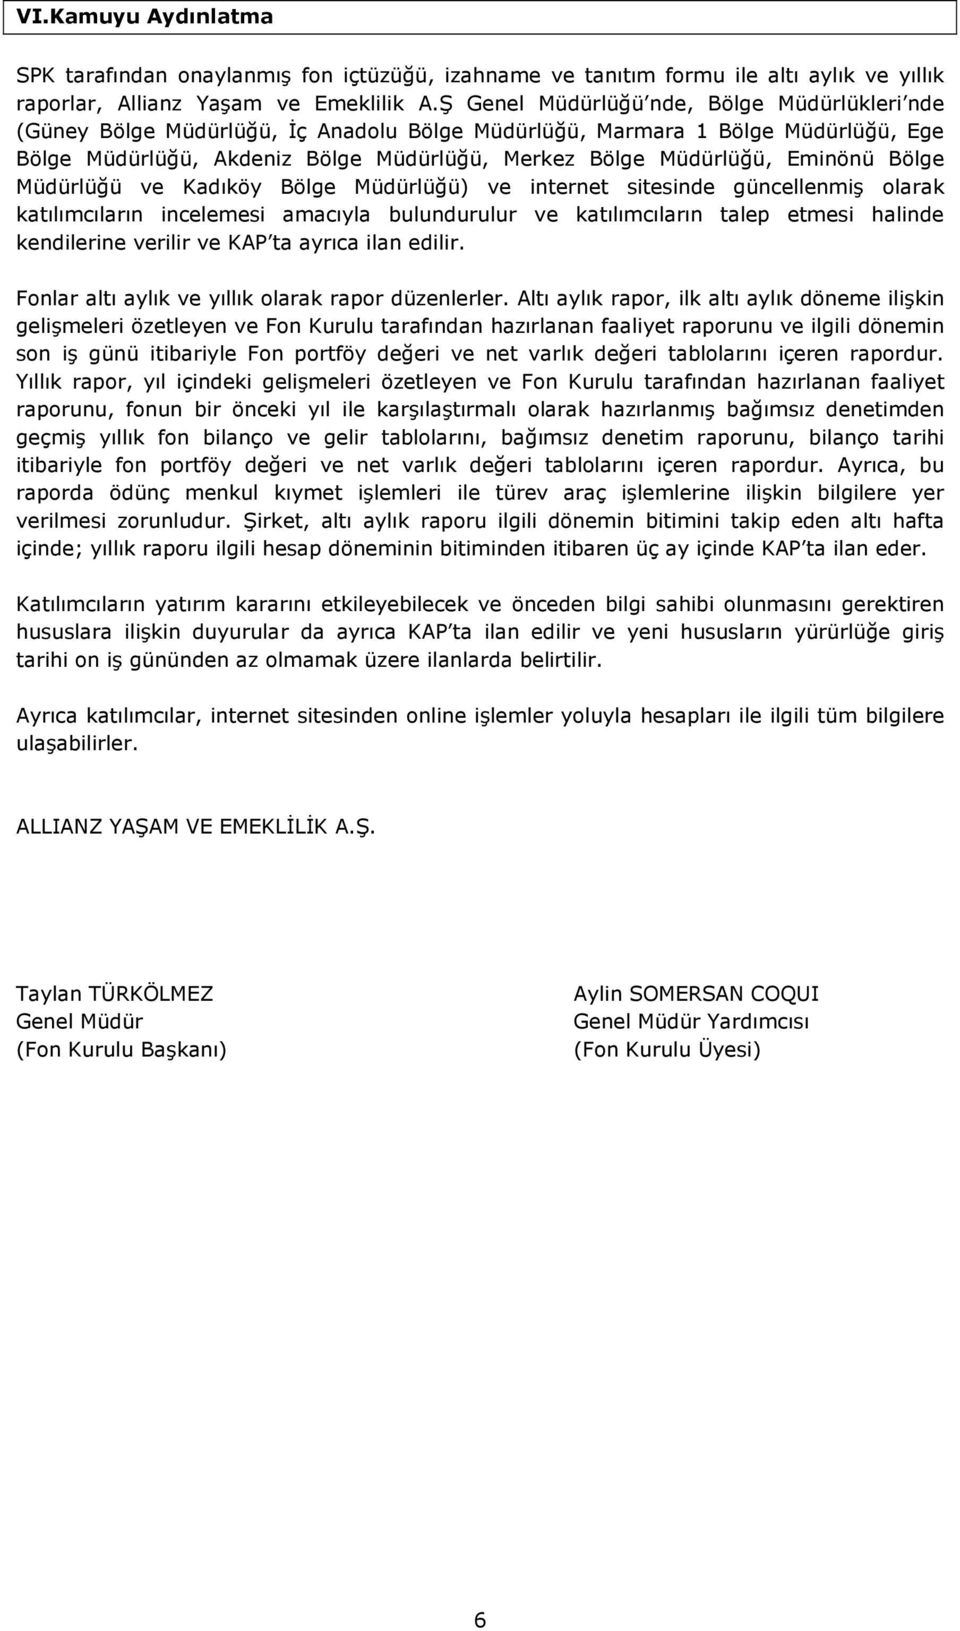 Eminönü Bölge Müdürlüğü ve Kadıköy Bölge Müdürlüğü) ve internet sitesinde güncellenmiş olarak katılımcıların incelemesi amacıyla bulundurulur ve katılımcıların talep etmesi halinde kendilerine